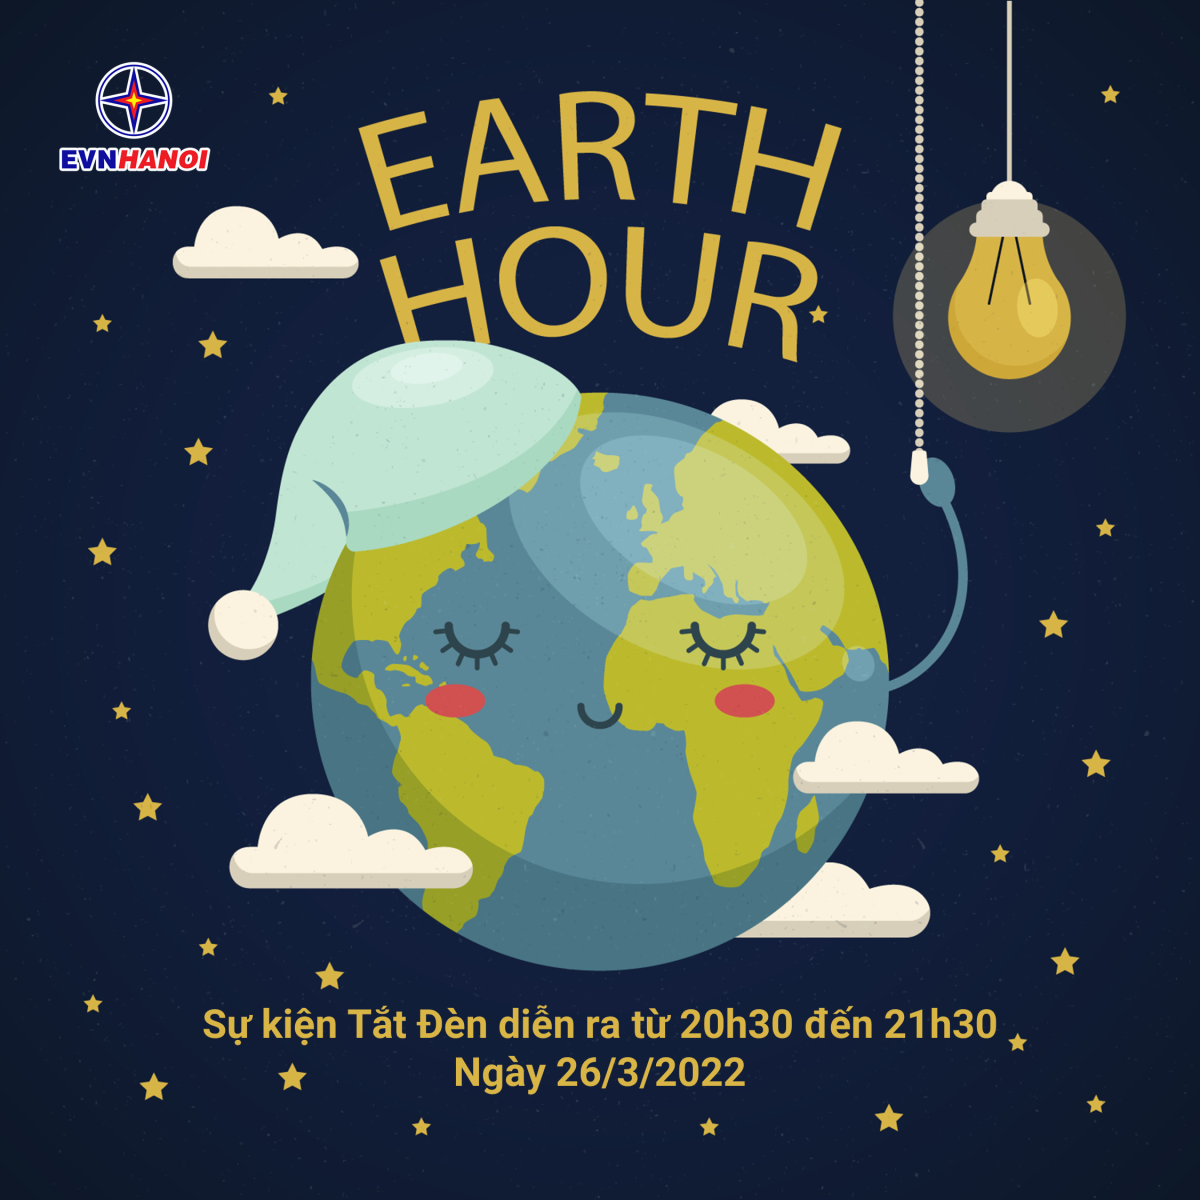 Sự kiện tắt đèn hưởng ứng Chiến dịch Giờ Trái đất năm 2022 sẽ diễn ra từ 20h30 đến 21h30, Thứ Bảy, ngày 26/3/2022